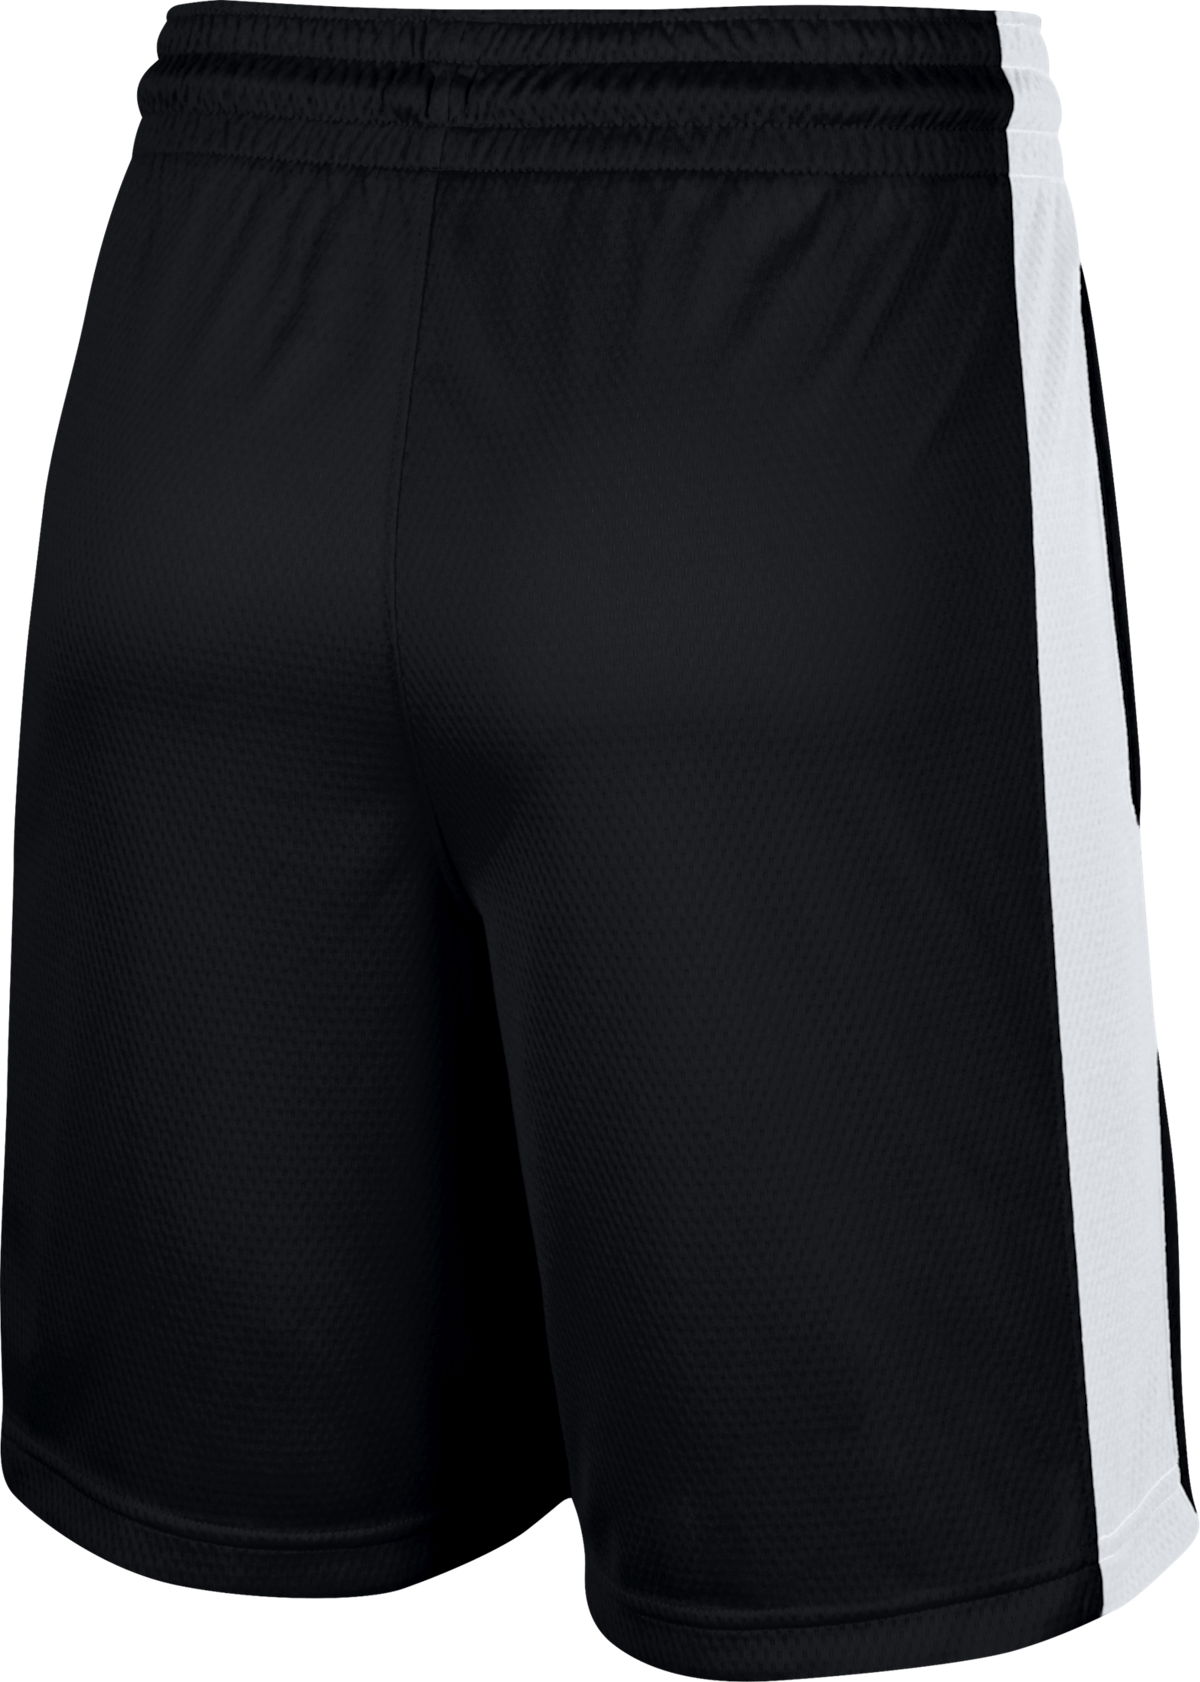 Women Dri-Fit Shorts Black/White/White